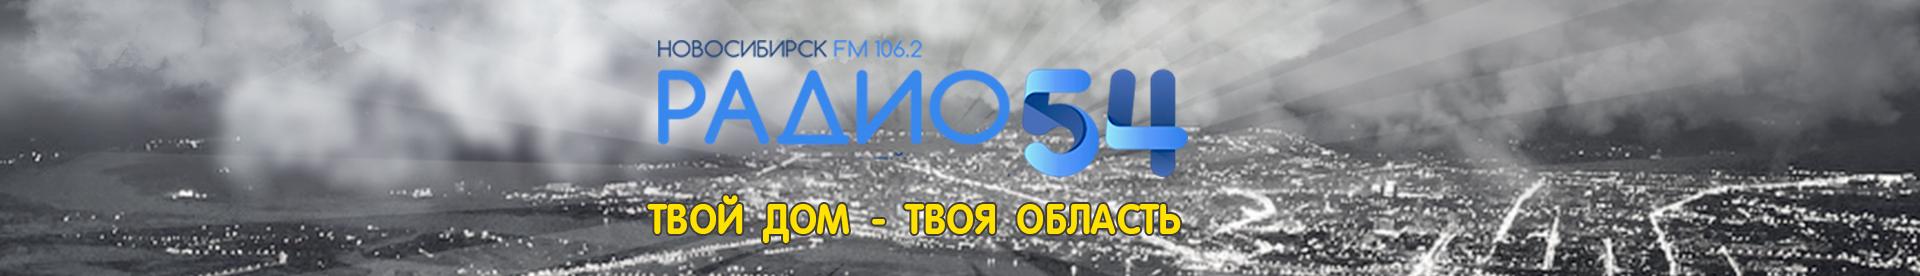 Радио 54 106.2. Радио 54 Новосибирск. Радио 54 Новосибирск логотипы. Радио 54 Новосибирск волна.